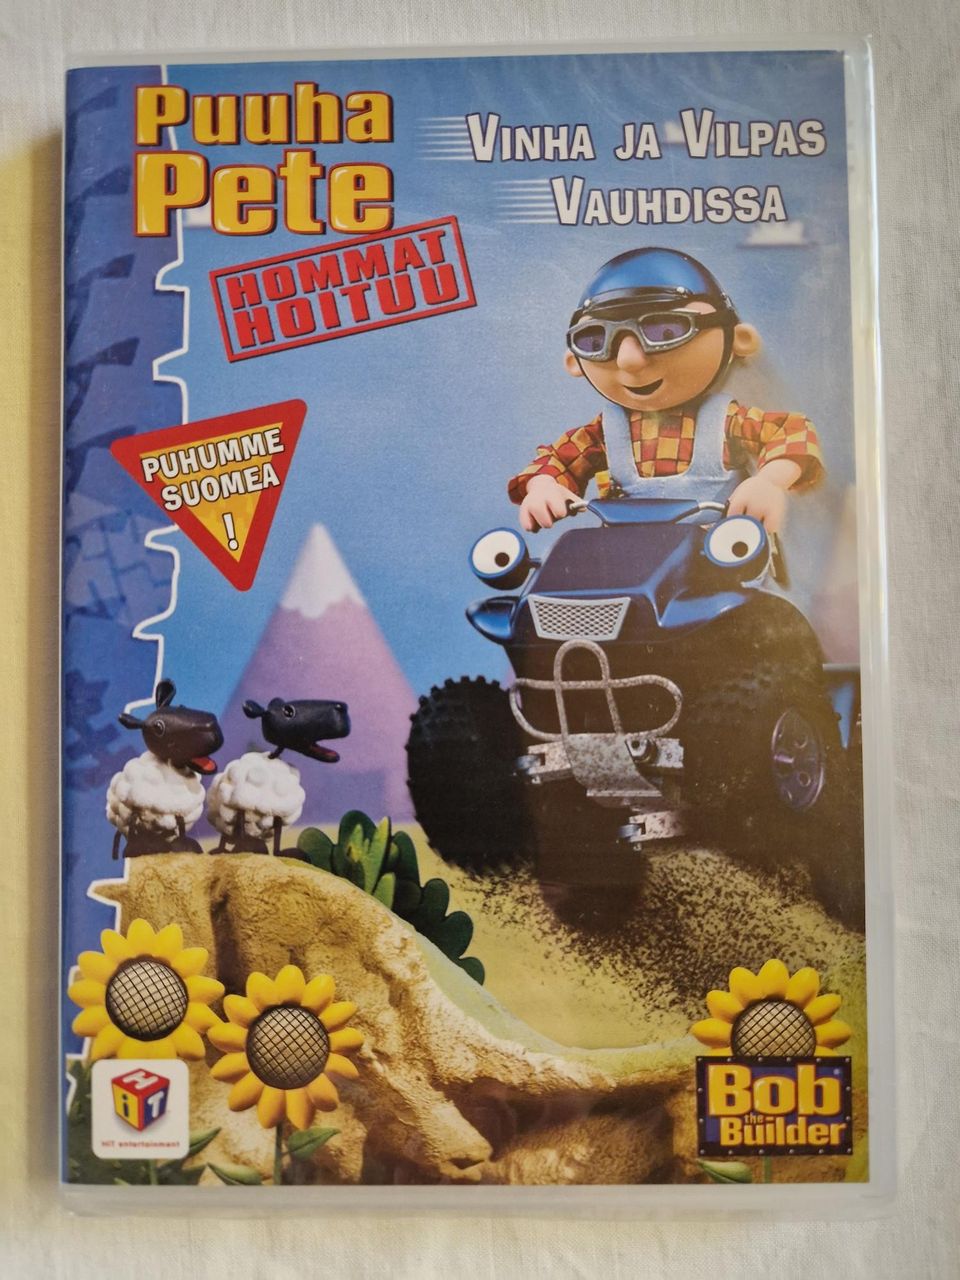 Puuha-Pete: Vinha ja Vilpas vauhdissa dvd